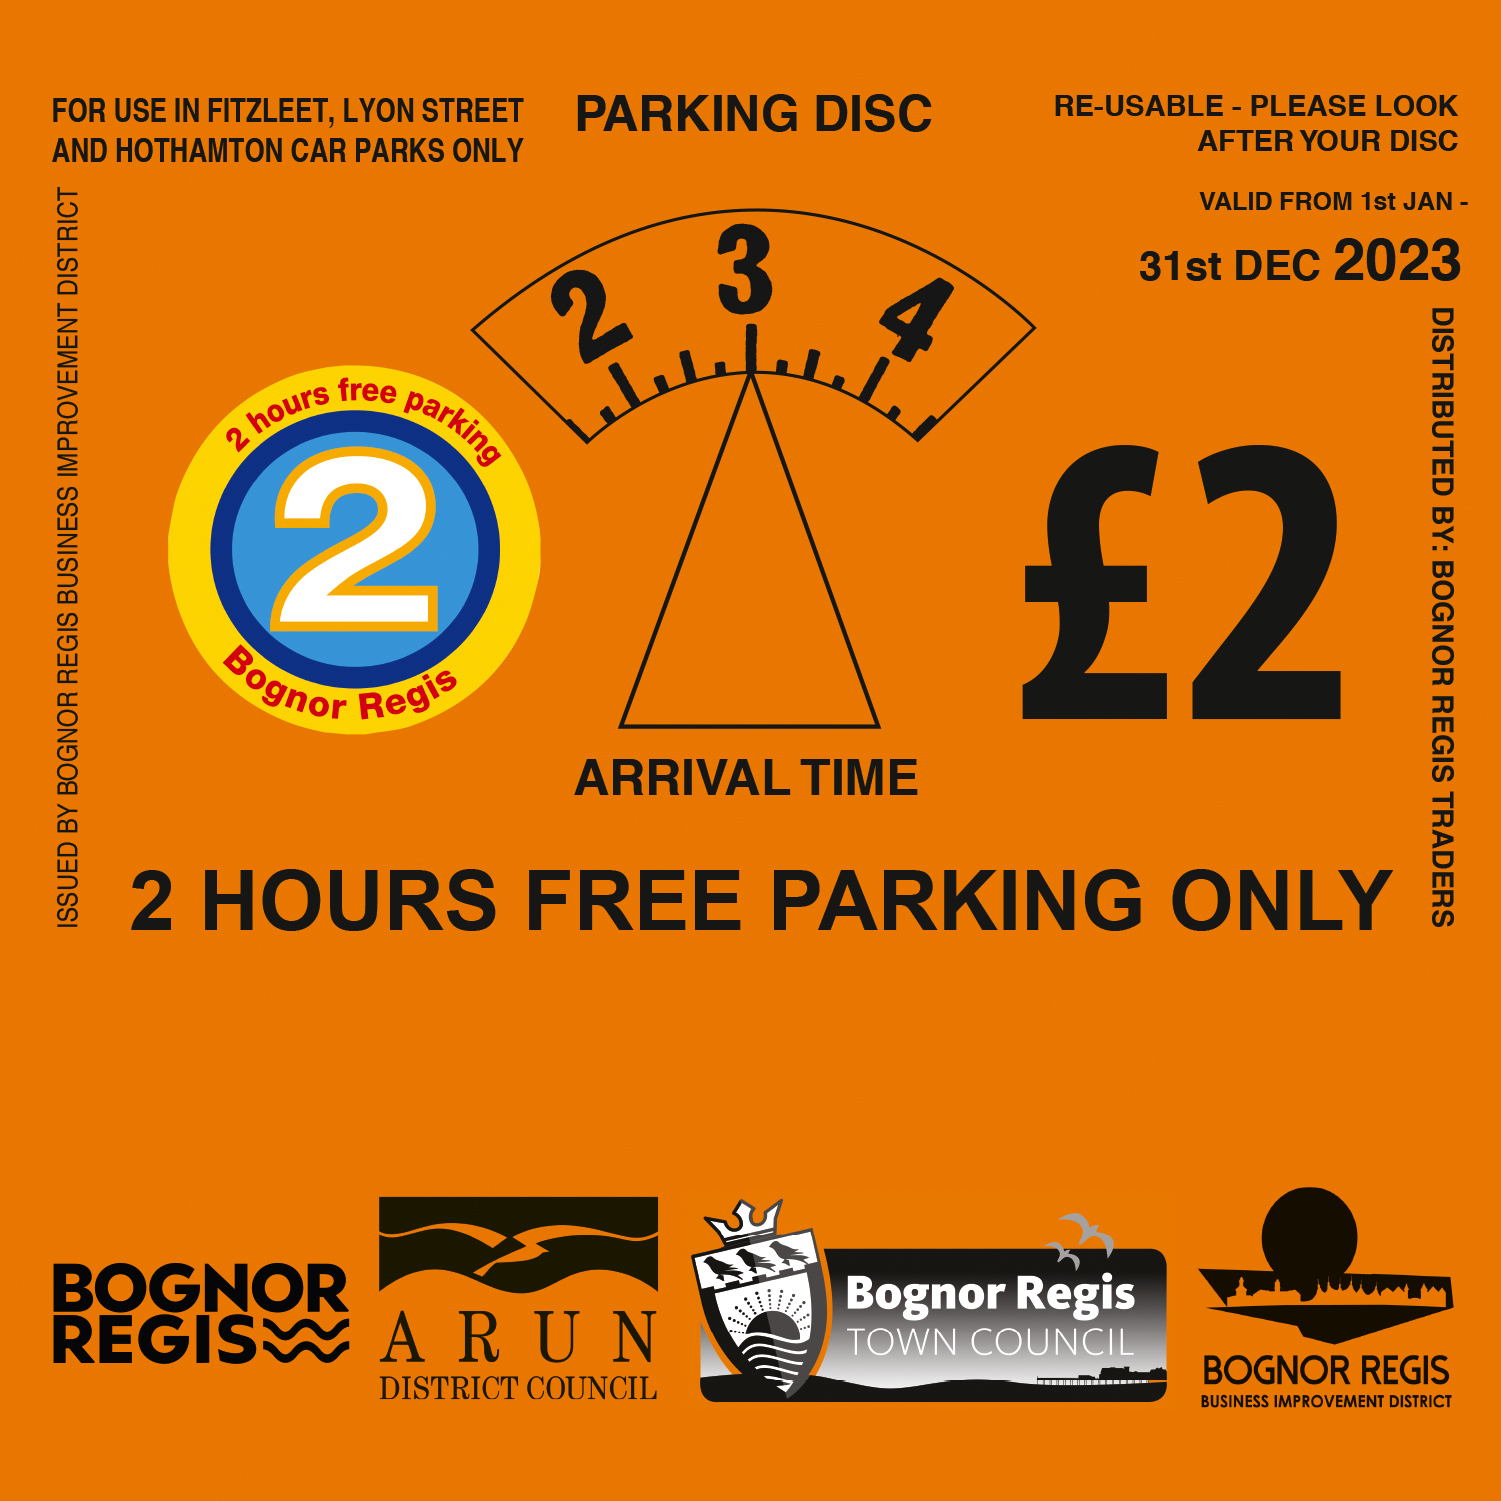 Two hours free parking in Bognor Regis